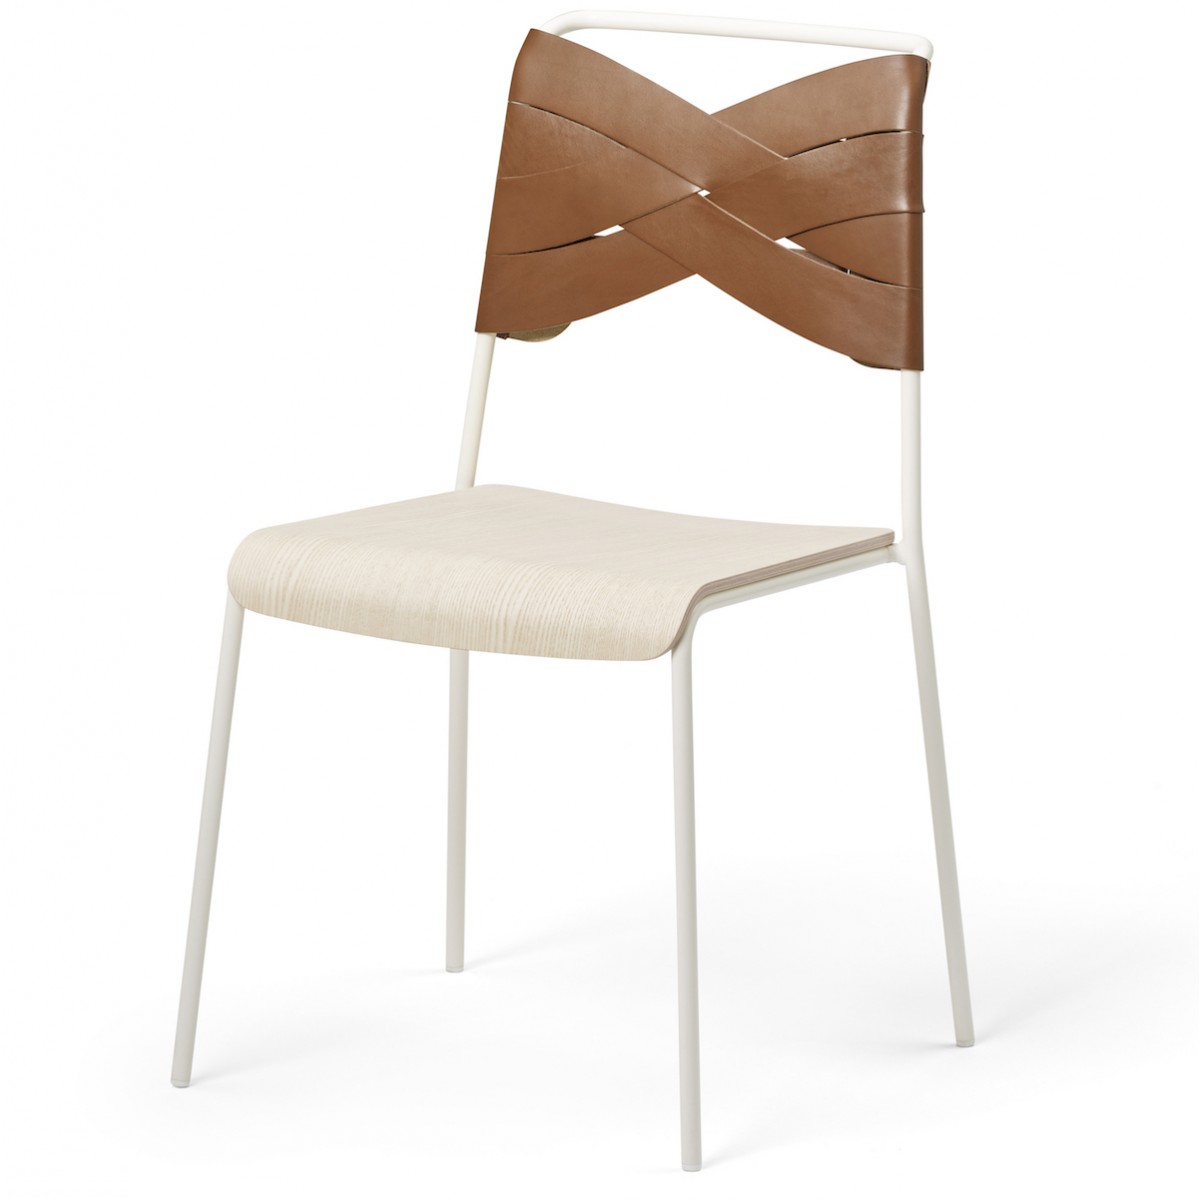 white/ash/cognac - Torso chair